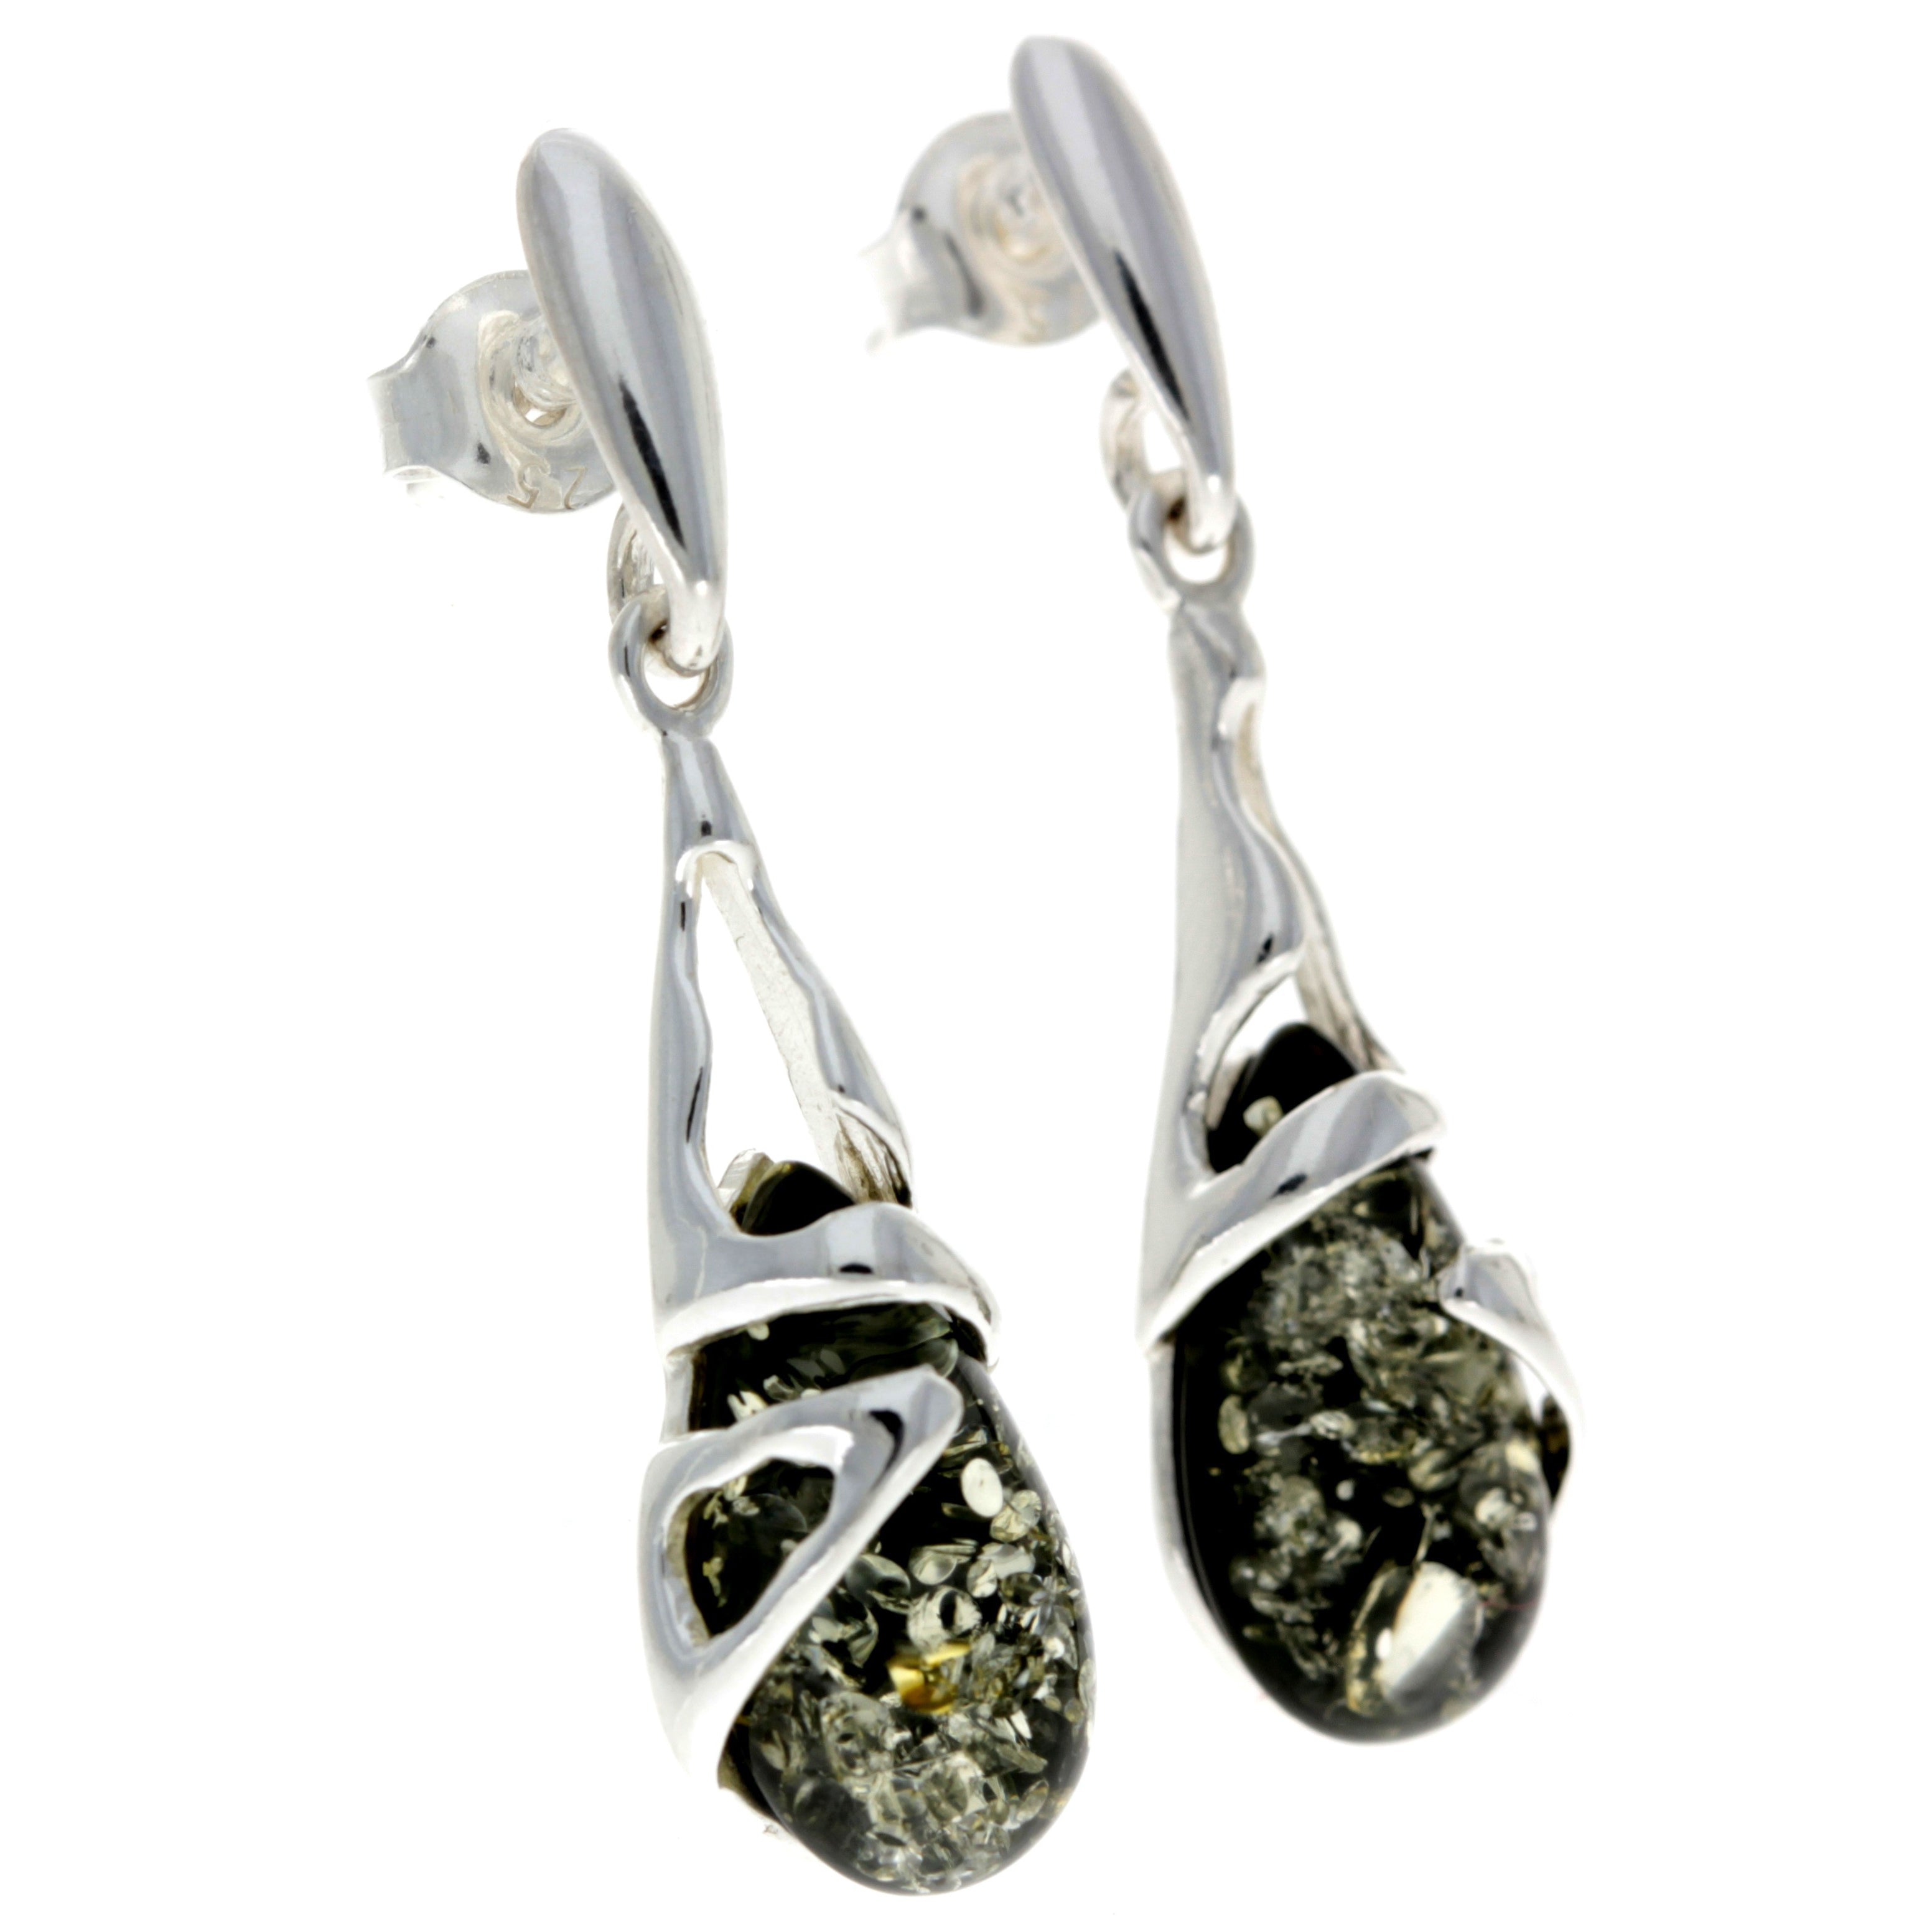 925 Sterling Silver & Genuine Baltic Amber Teardrop Modern Earrings - GL054